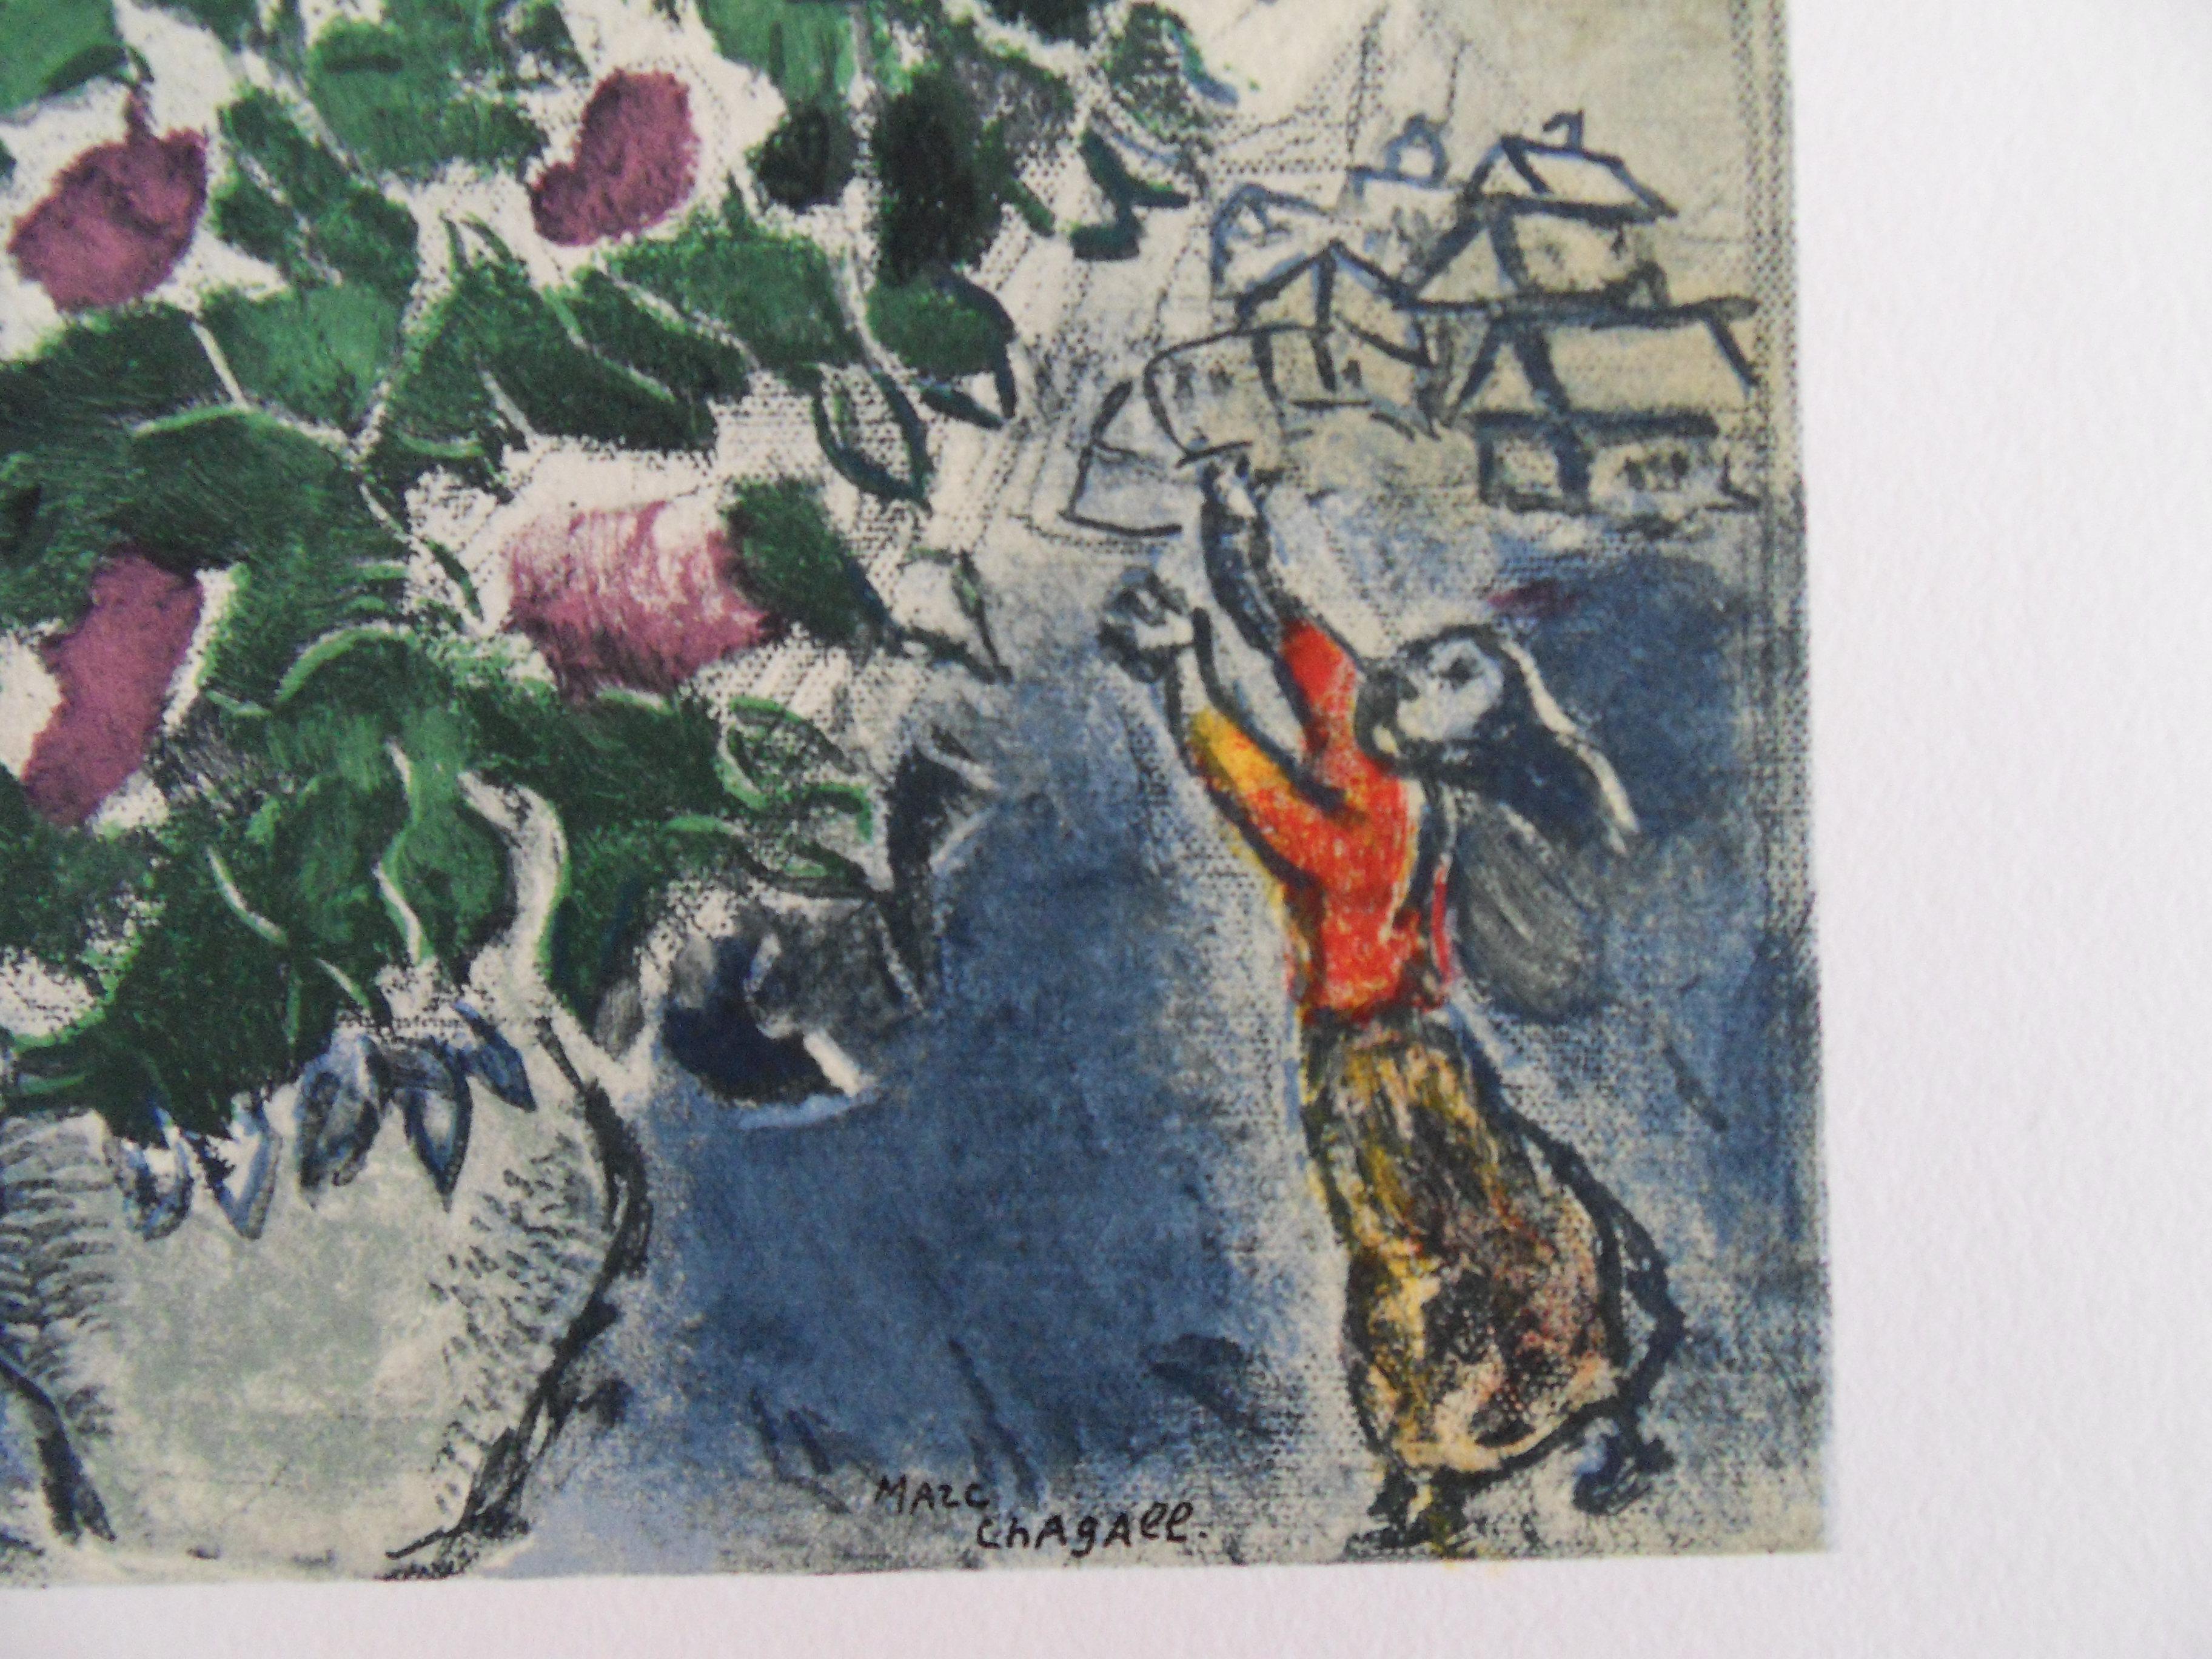 Les amoureux avec un bouquet de fleurs - Lithographie originale - 1965 - Moderne Print par Marc Chagall